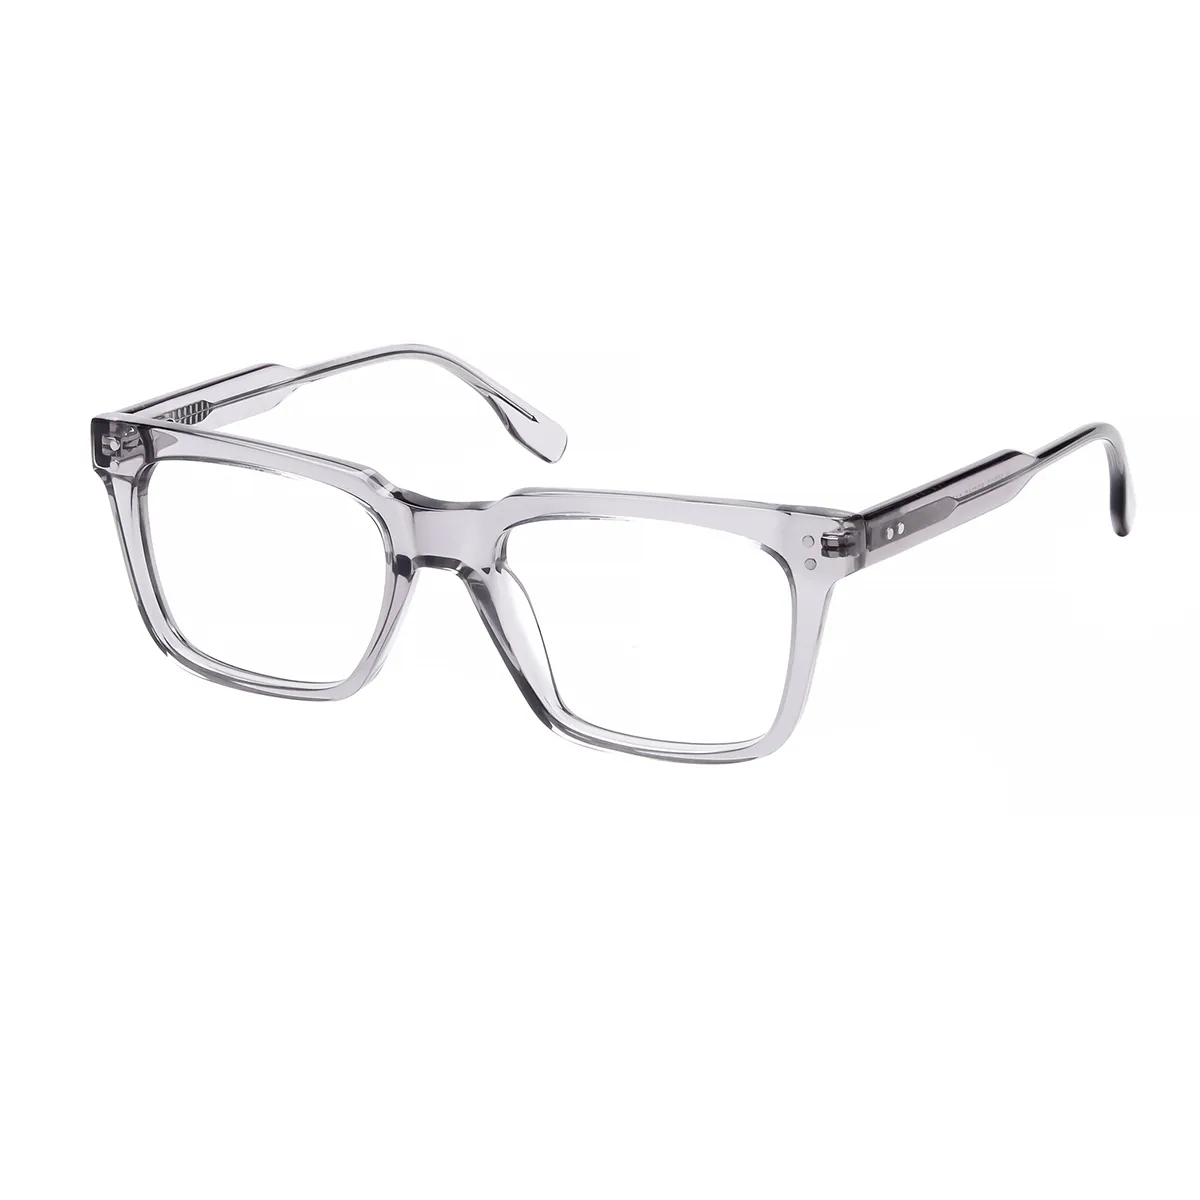 Ruio - Square Gray Glasses for Men